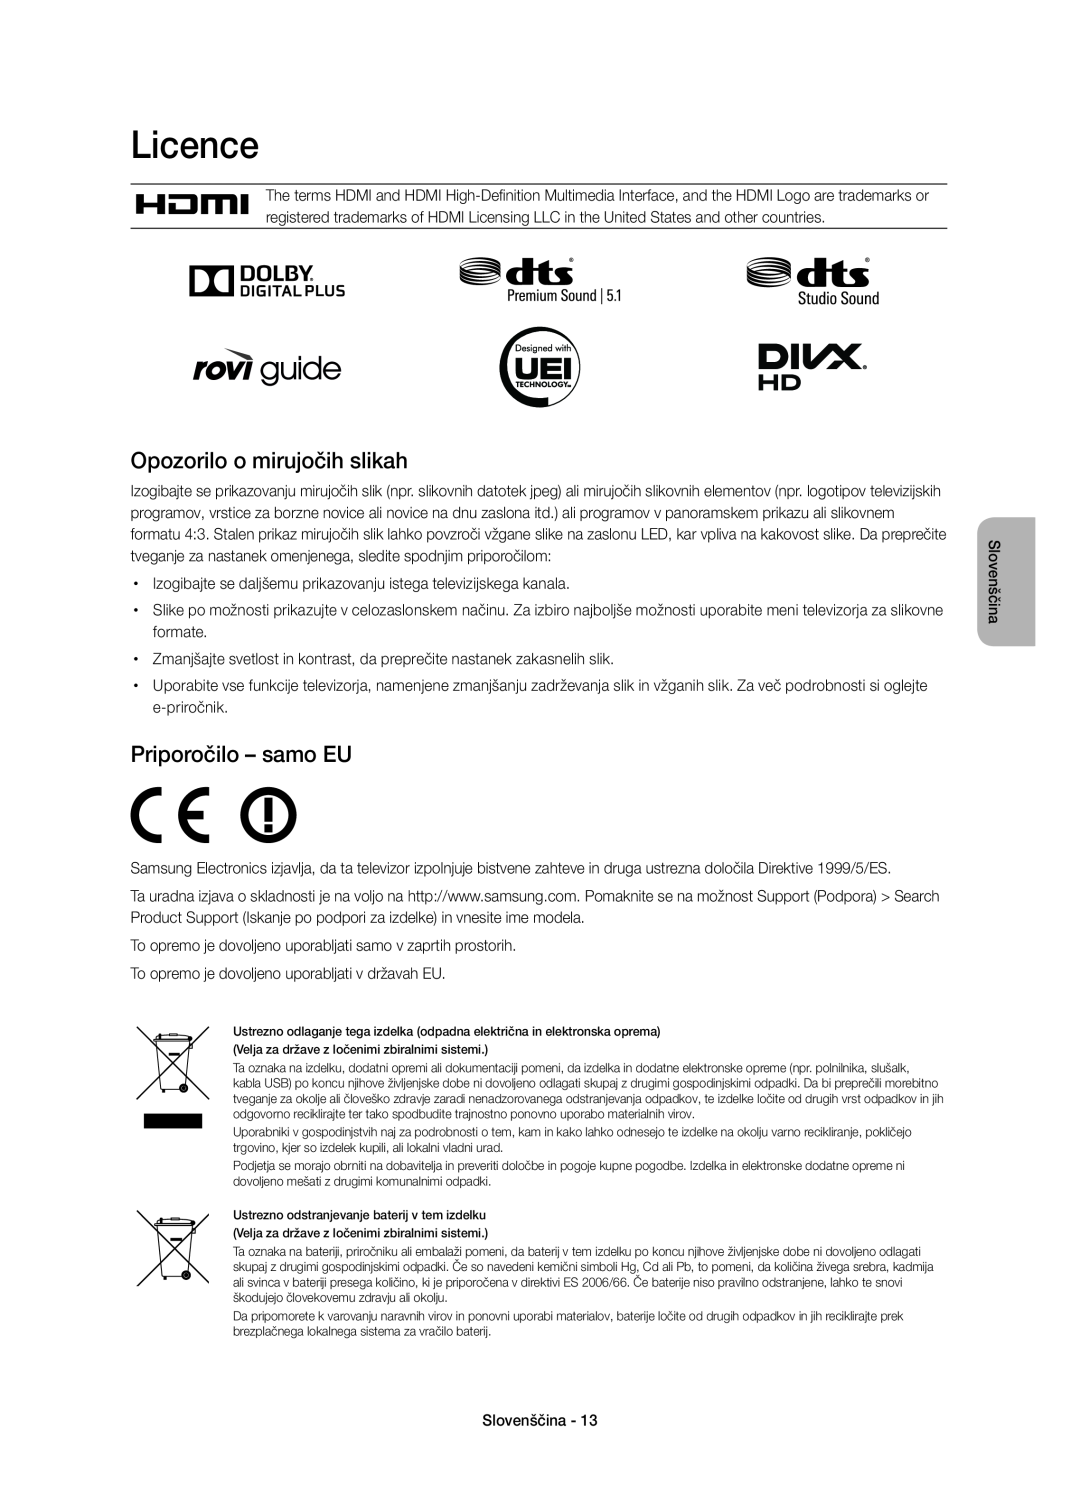 Samsung UE32H6410SUXXH, UE55H6410SSXXH manual Opozorilo o mirujočih slikah, Priporočilo - samo EU, Licence, Slovenščina 